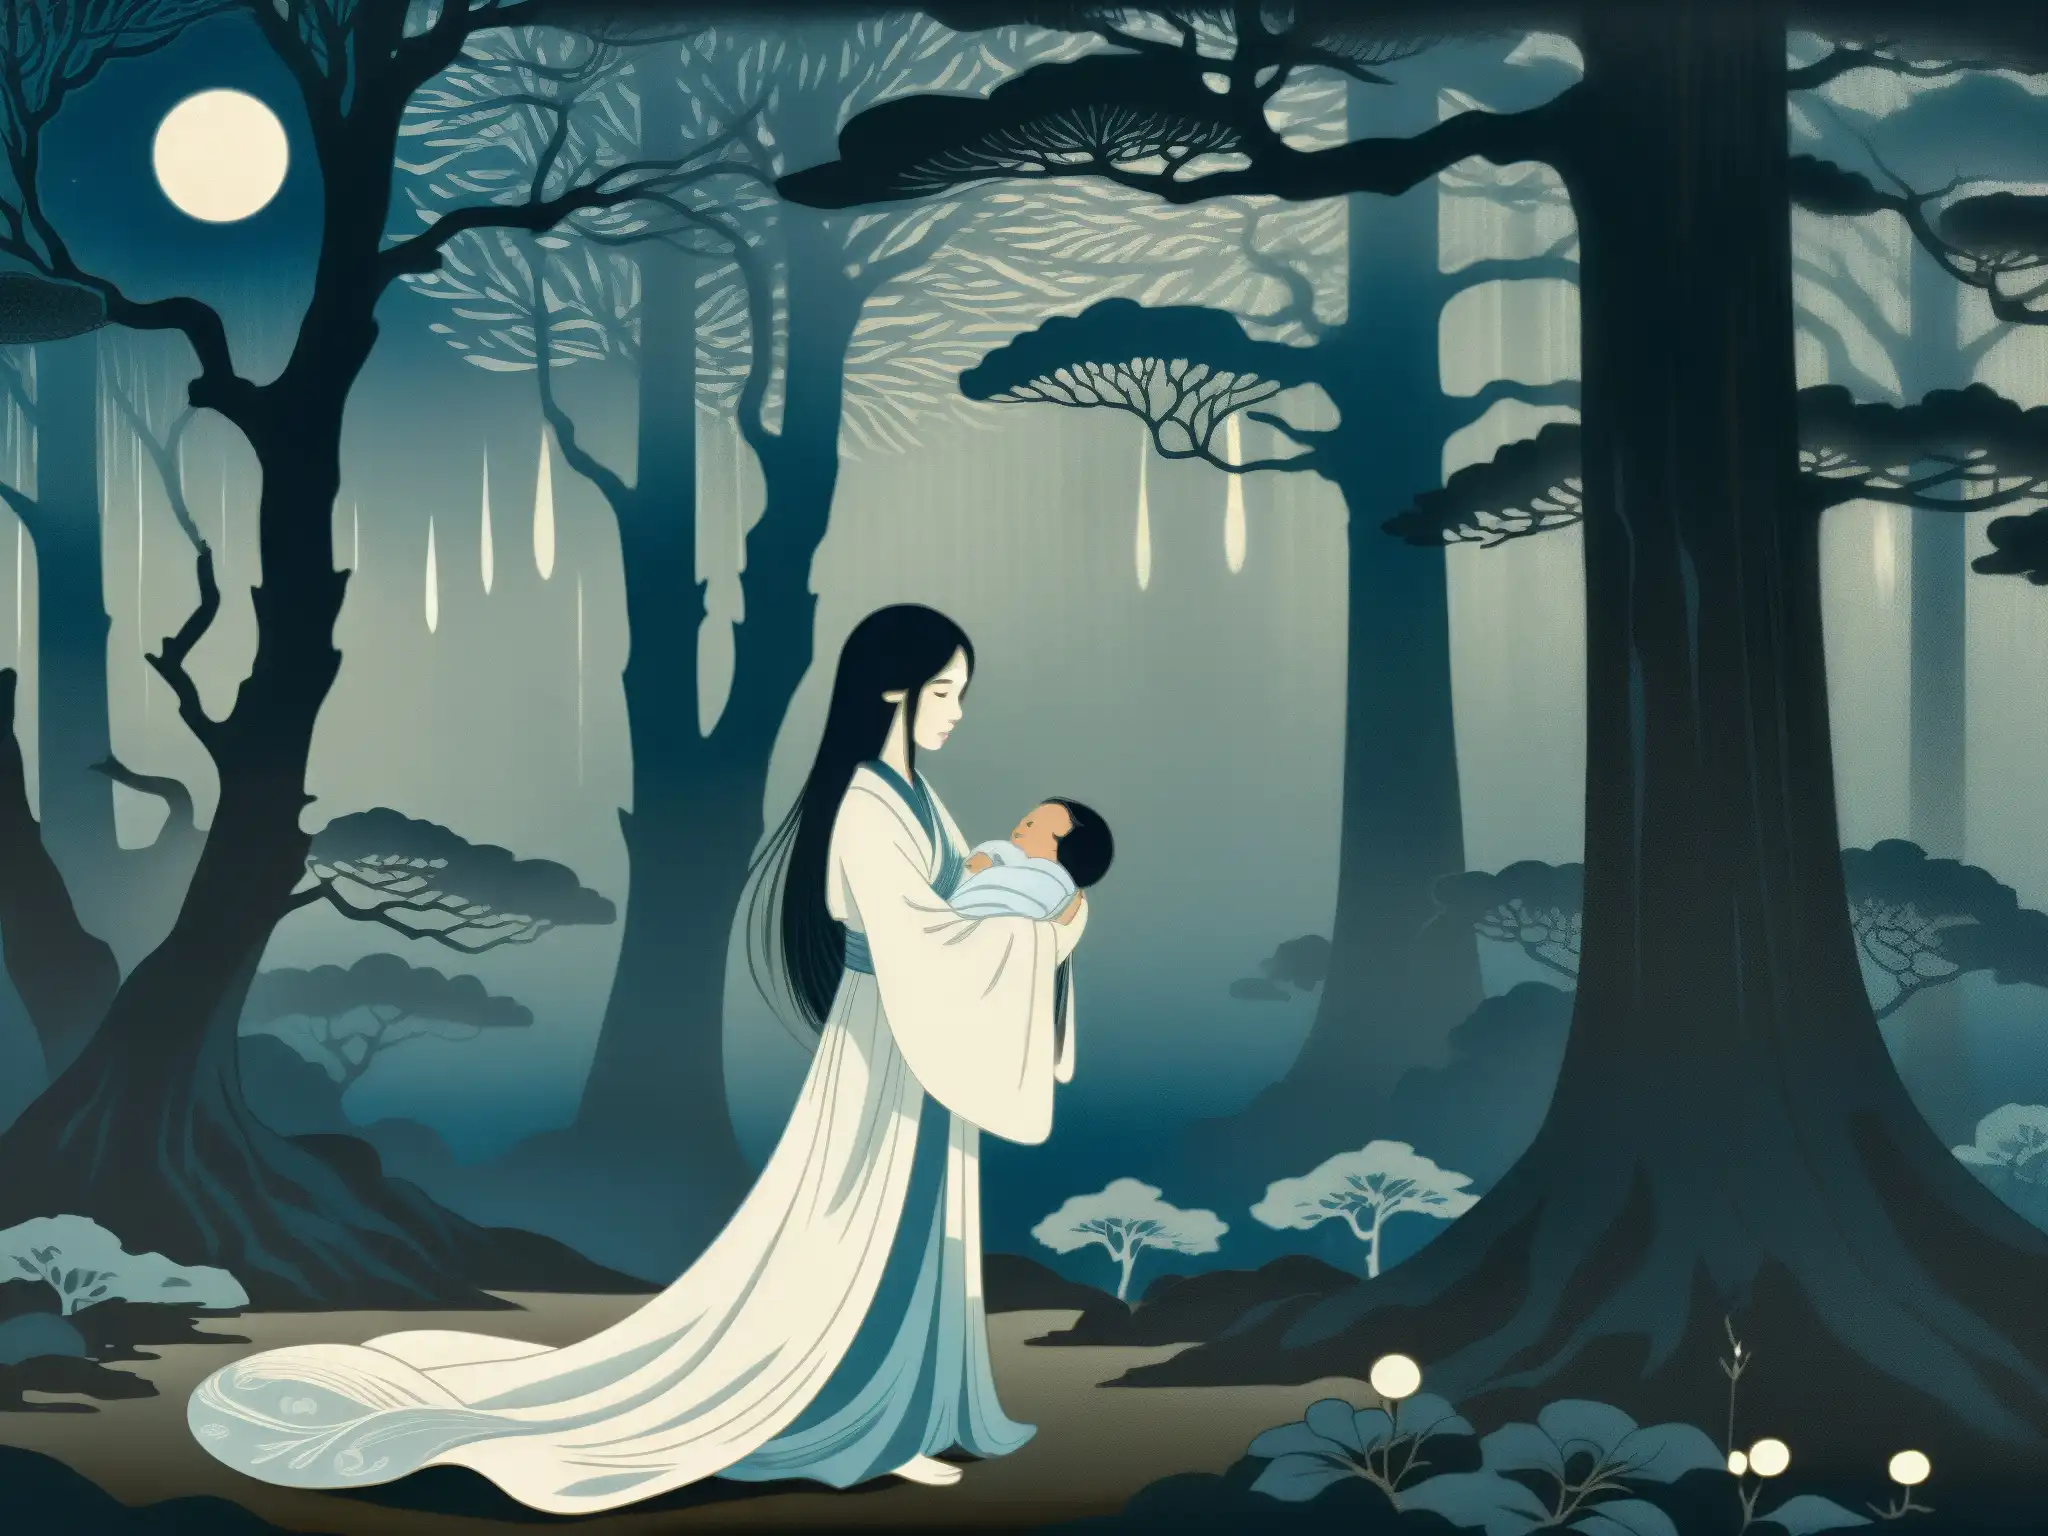 Retrato de Ubume y su bebé en el bosque, evocando el misterio y la tragedia del folklore japonés de madres fantasmales